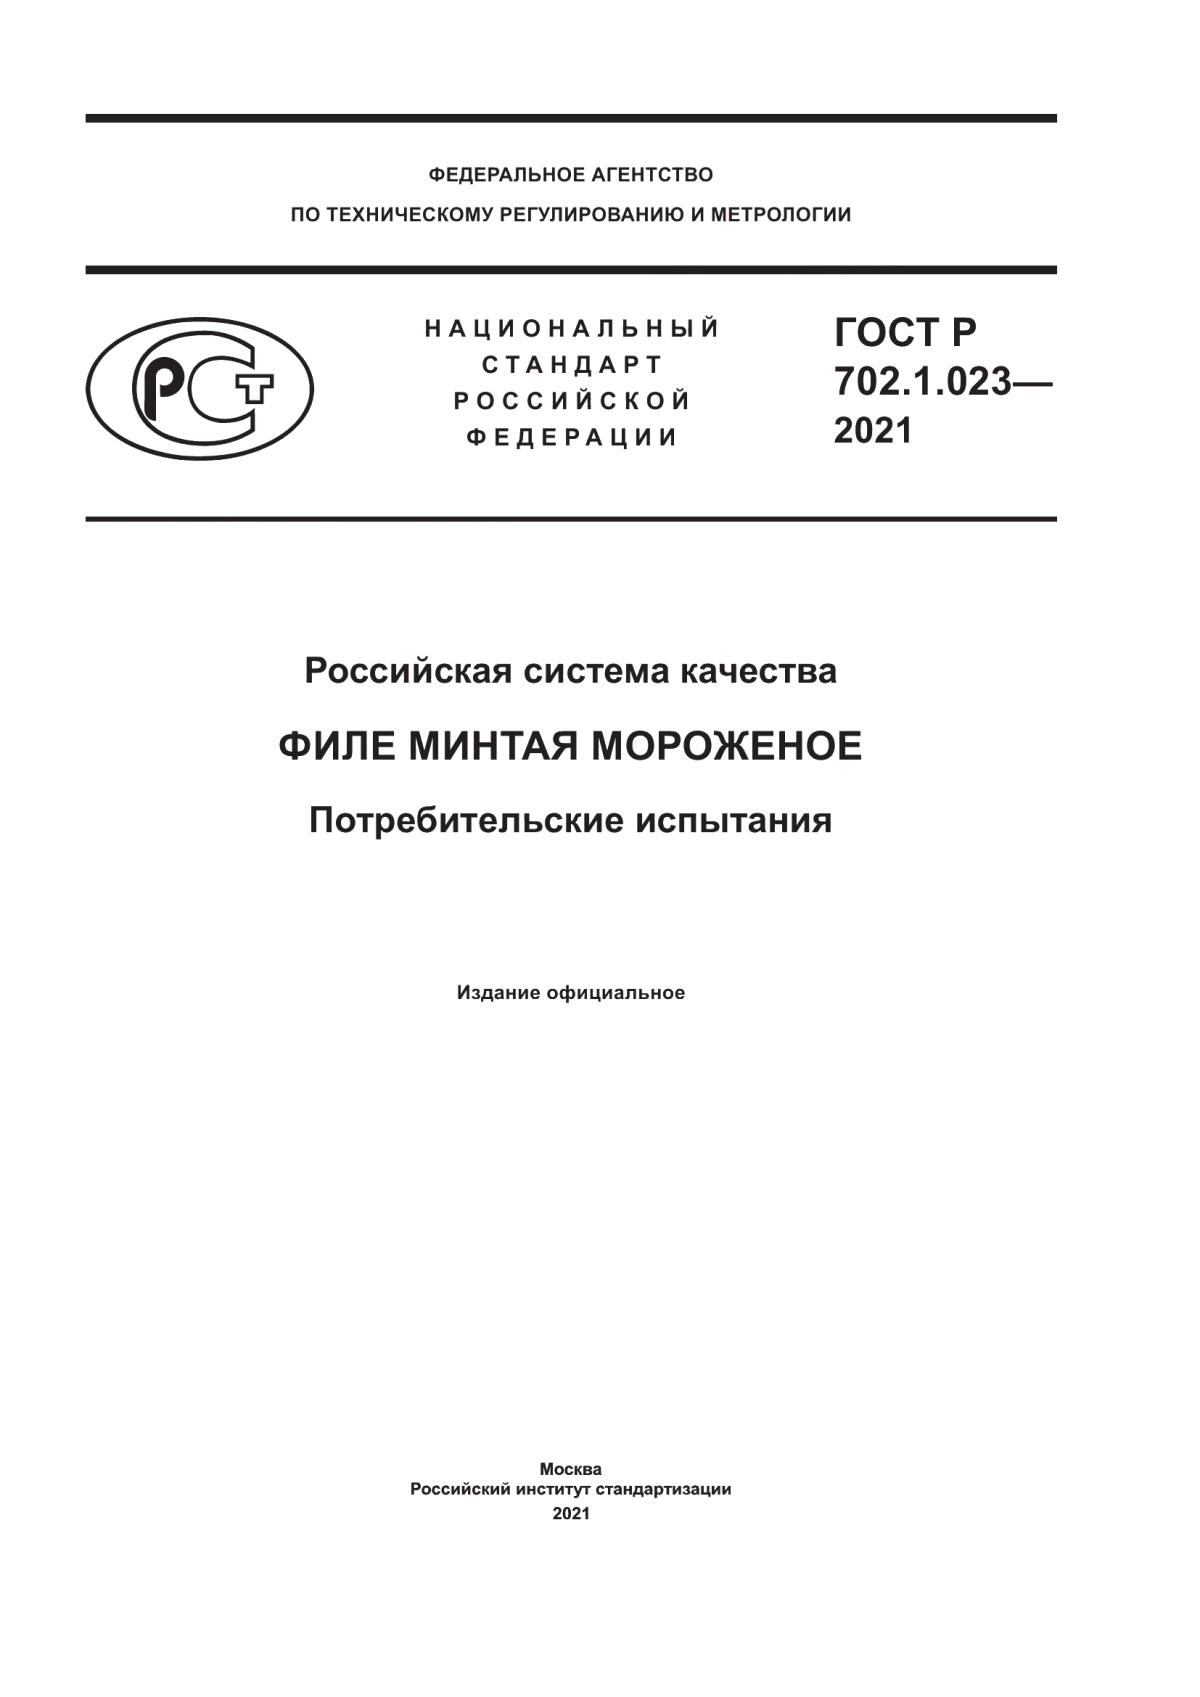 ГОСТ Р 702.1.023-2021 Российская система качества. Филе минтая мороженое. Потребительские испытания